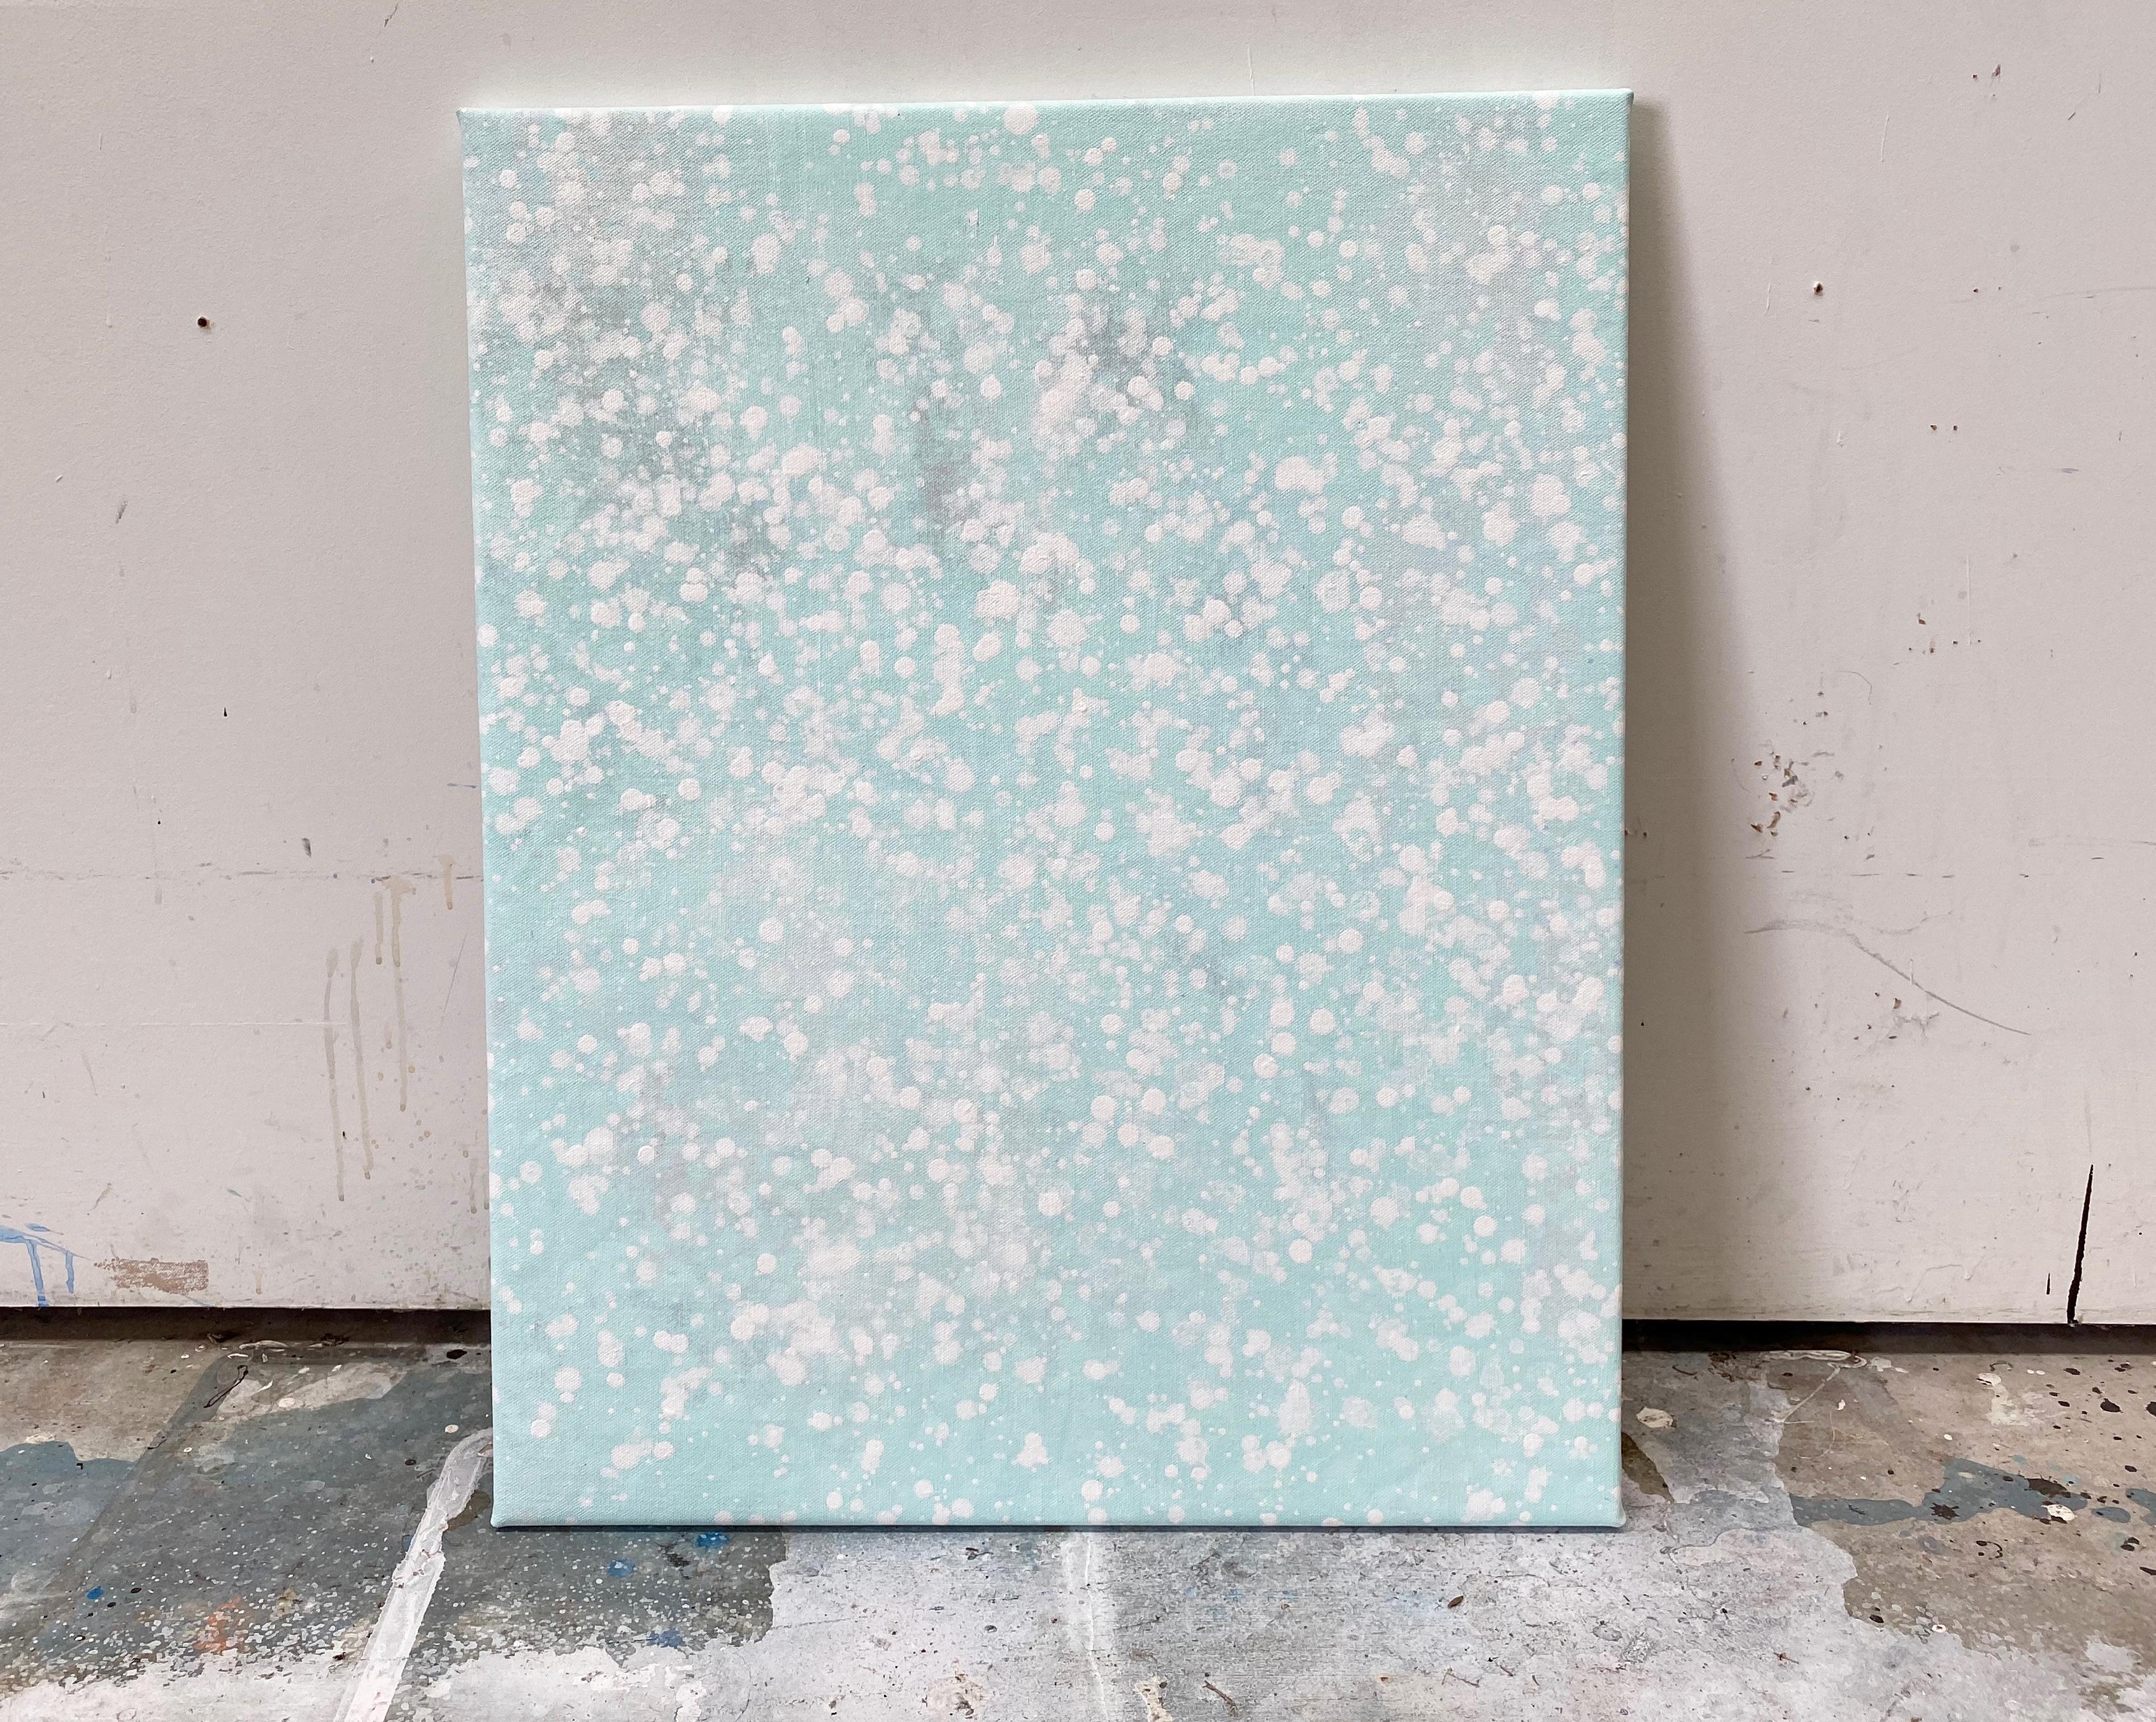 Its snowing pastell mintgrüner Punkt abstraktes expressionistisches Gemälde auf Leinen – Painting von Kathleen Rhee